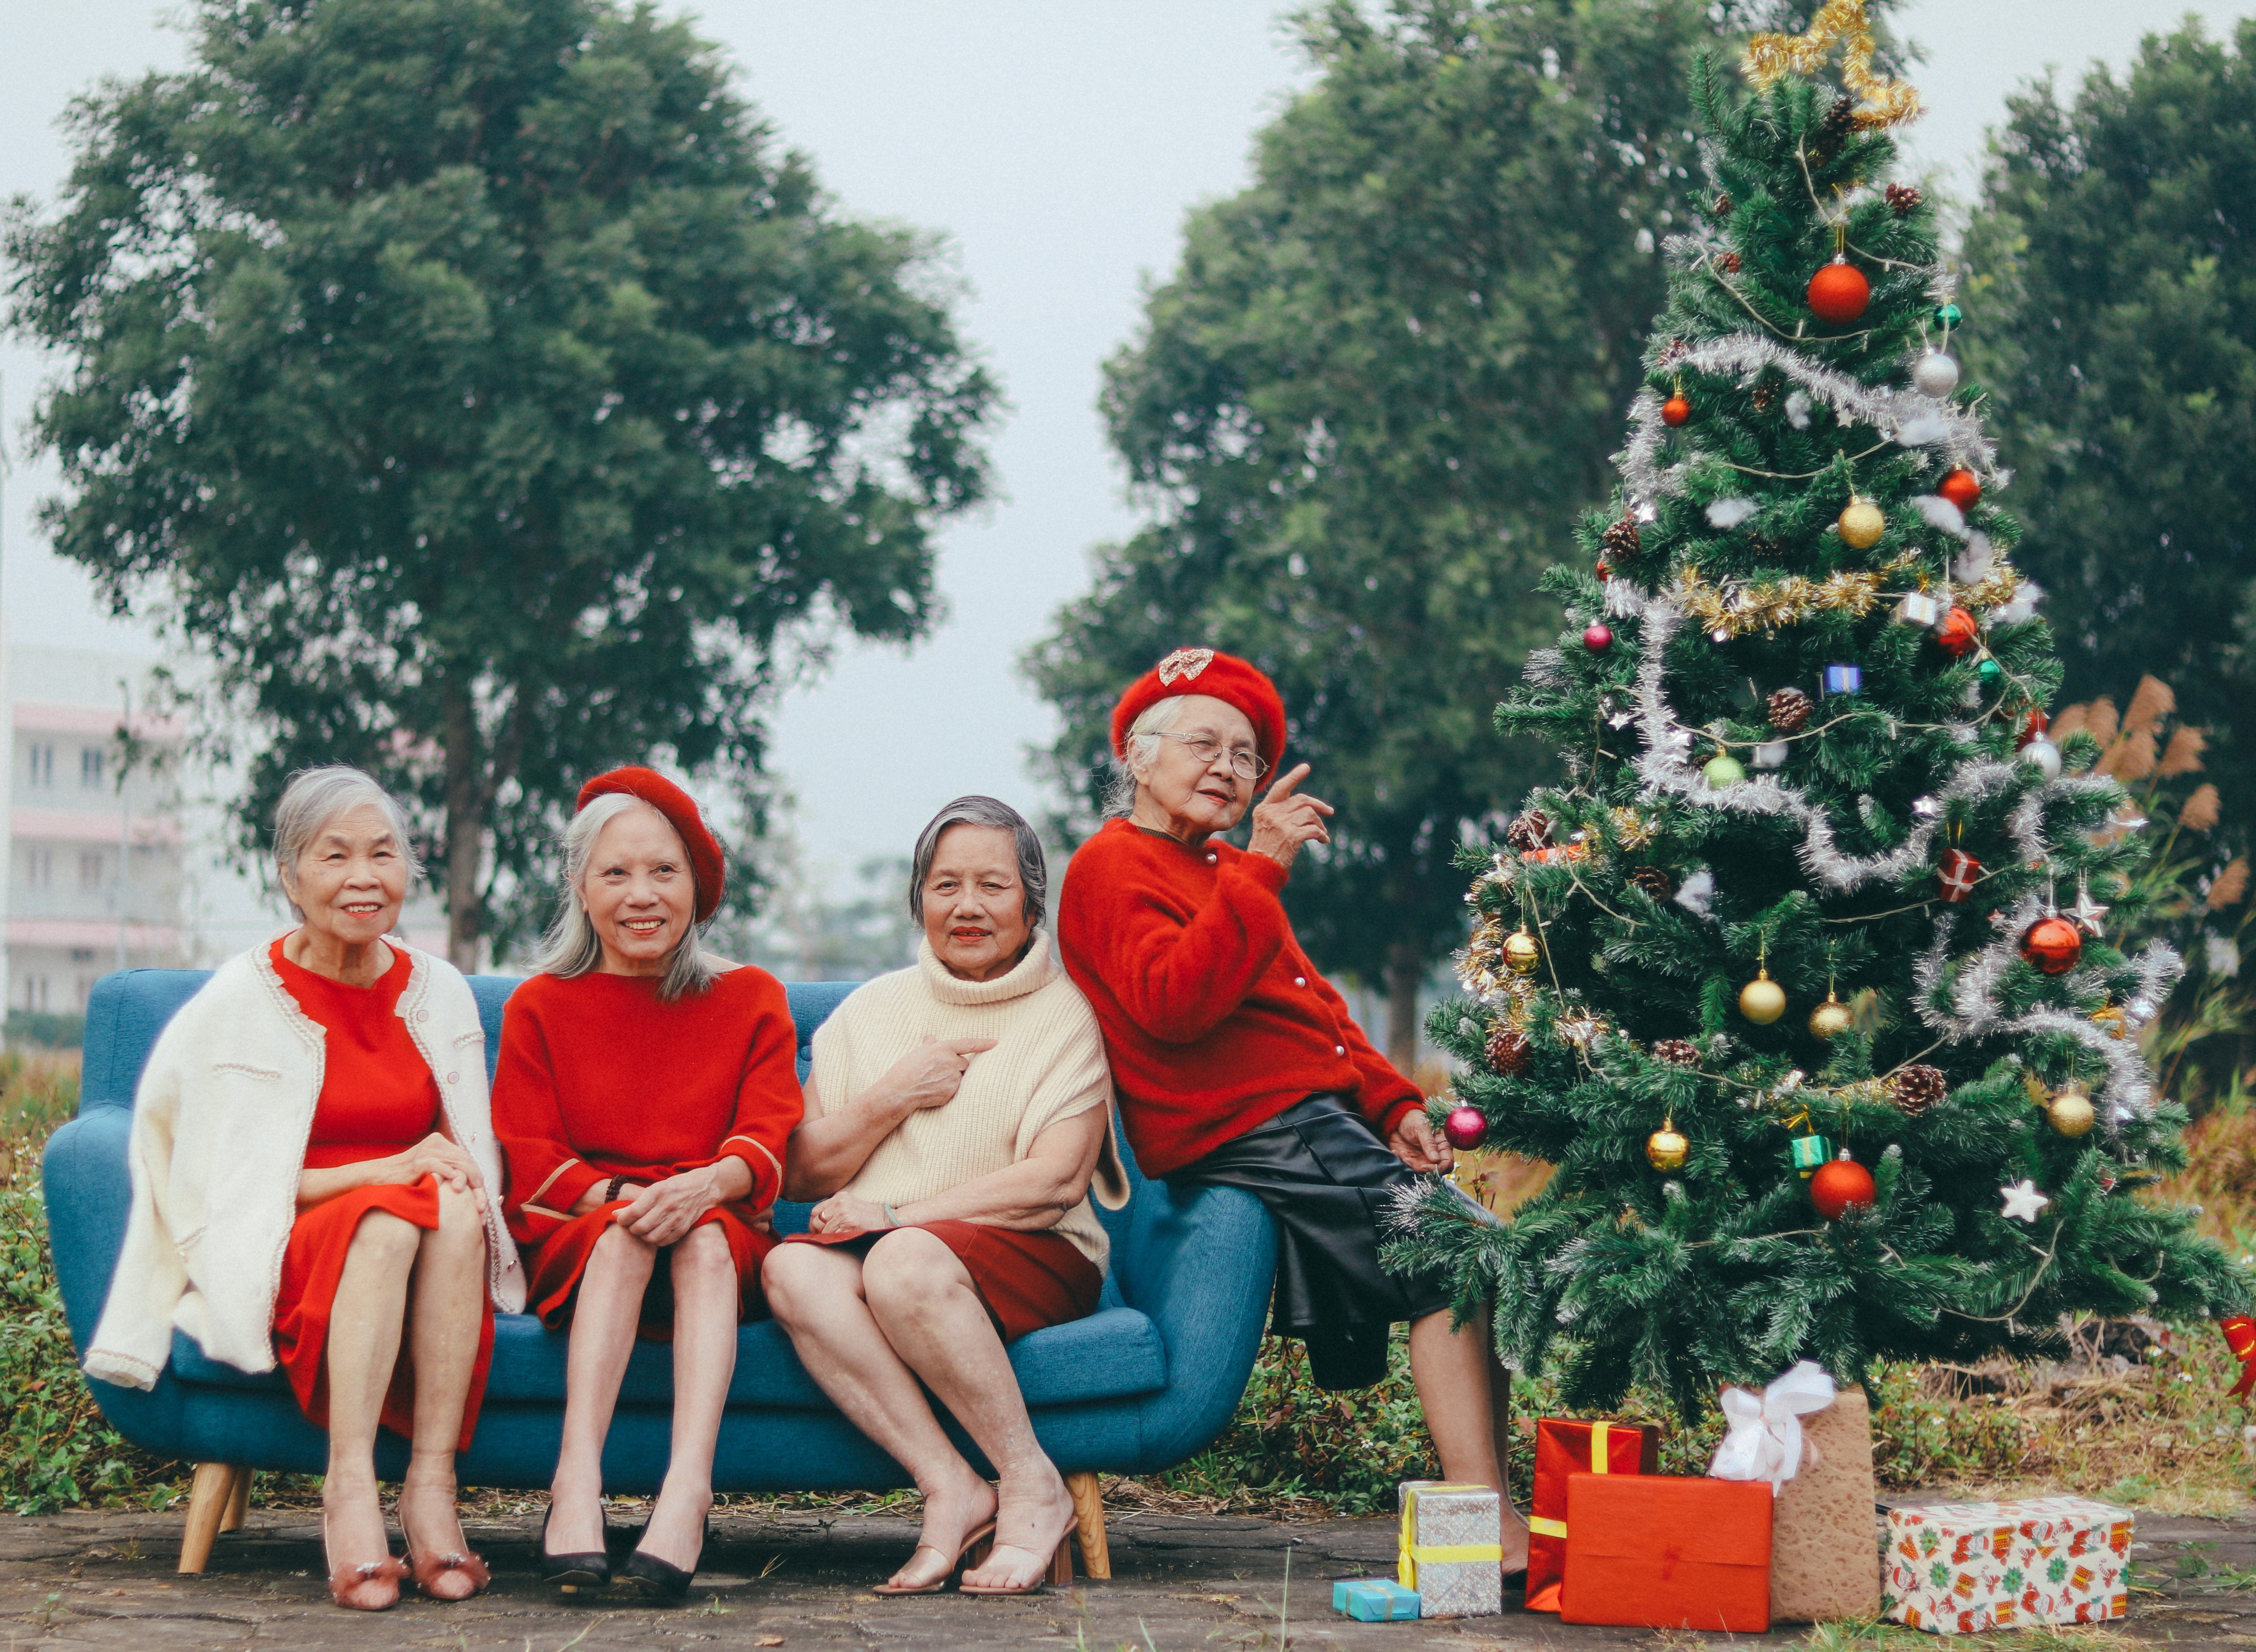 Cụ bà U90 tươi cười hái quà giáng sinh ở Hà Nội, hình ảnh khiến ai nhìn vào cũng thấy được tình cảm và sự chân thành của người lớn tuổi. Hãy đến xem và cảm nhận sự ấm áp của mùa giáng sinh tại Hà Nội.